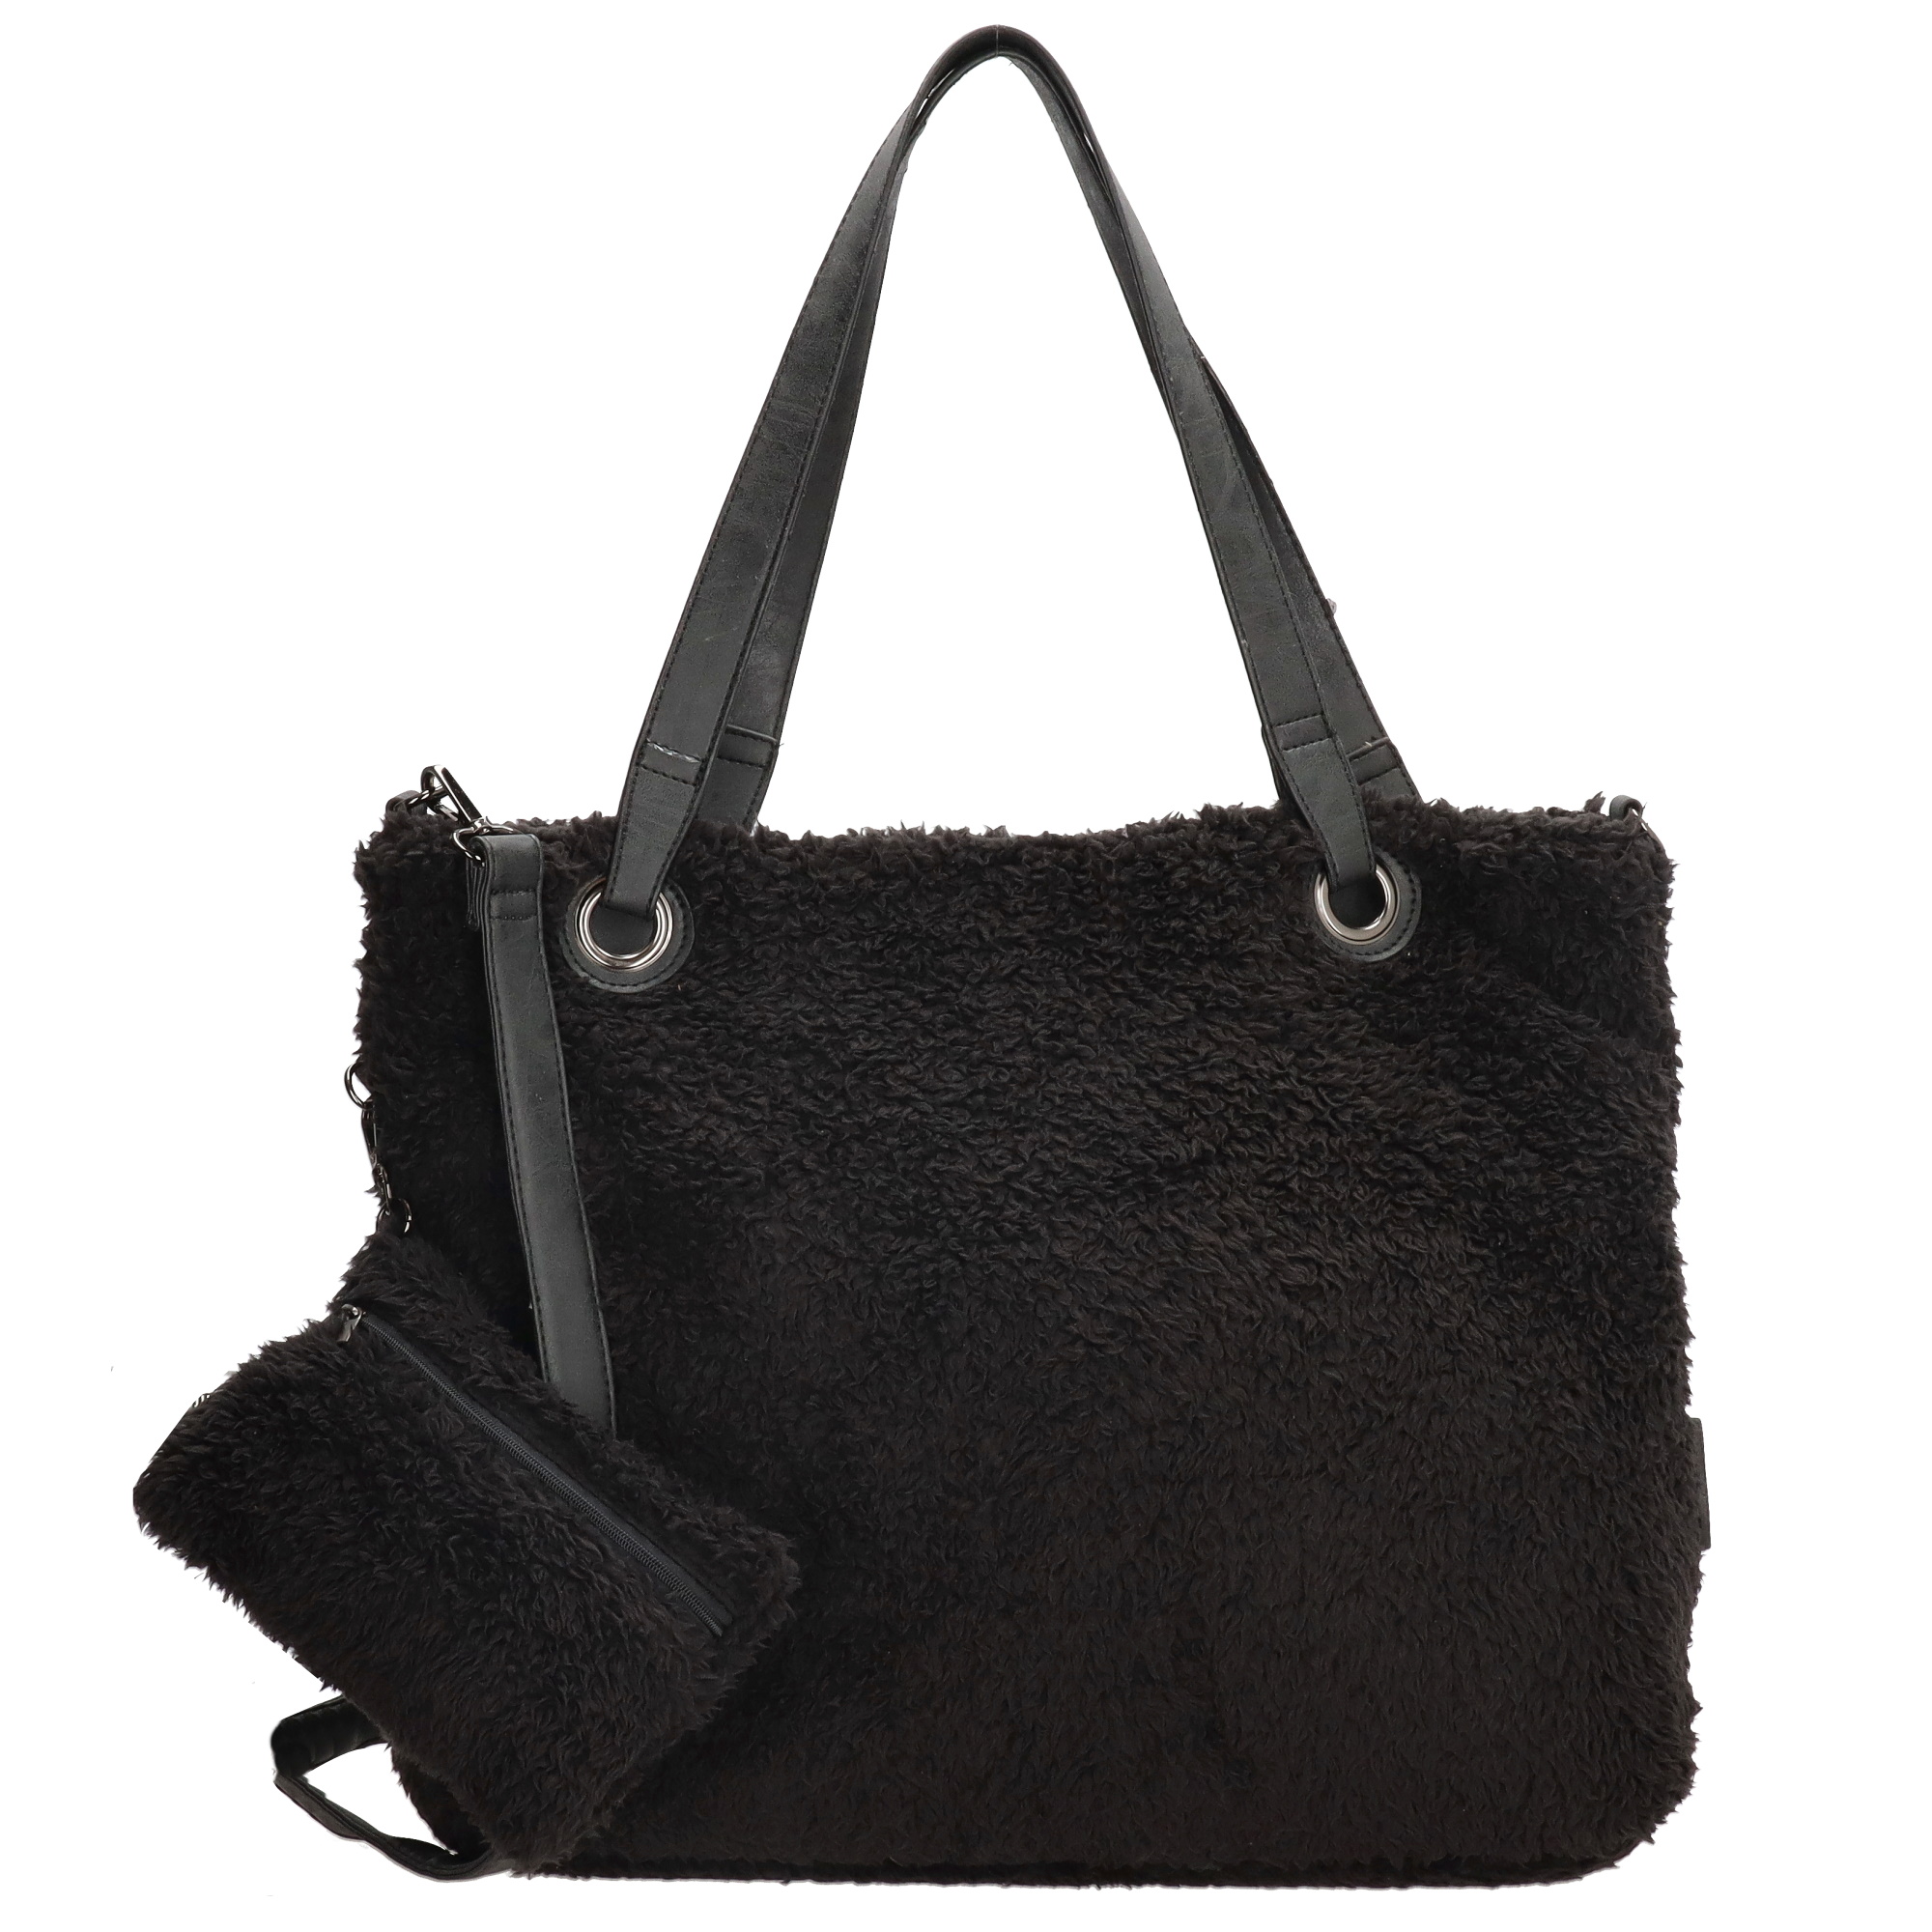 Stor handväska i teddymaterial med extra liten väska, svart väska